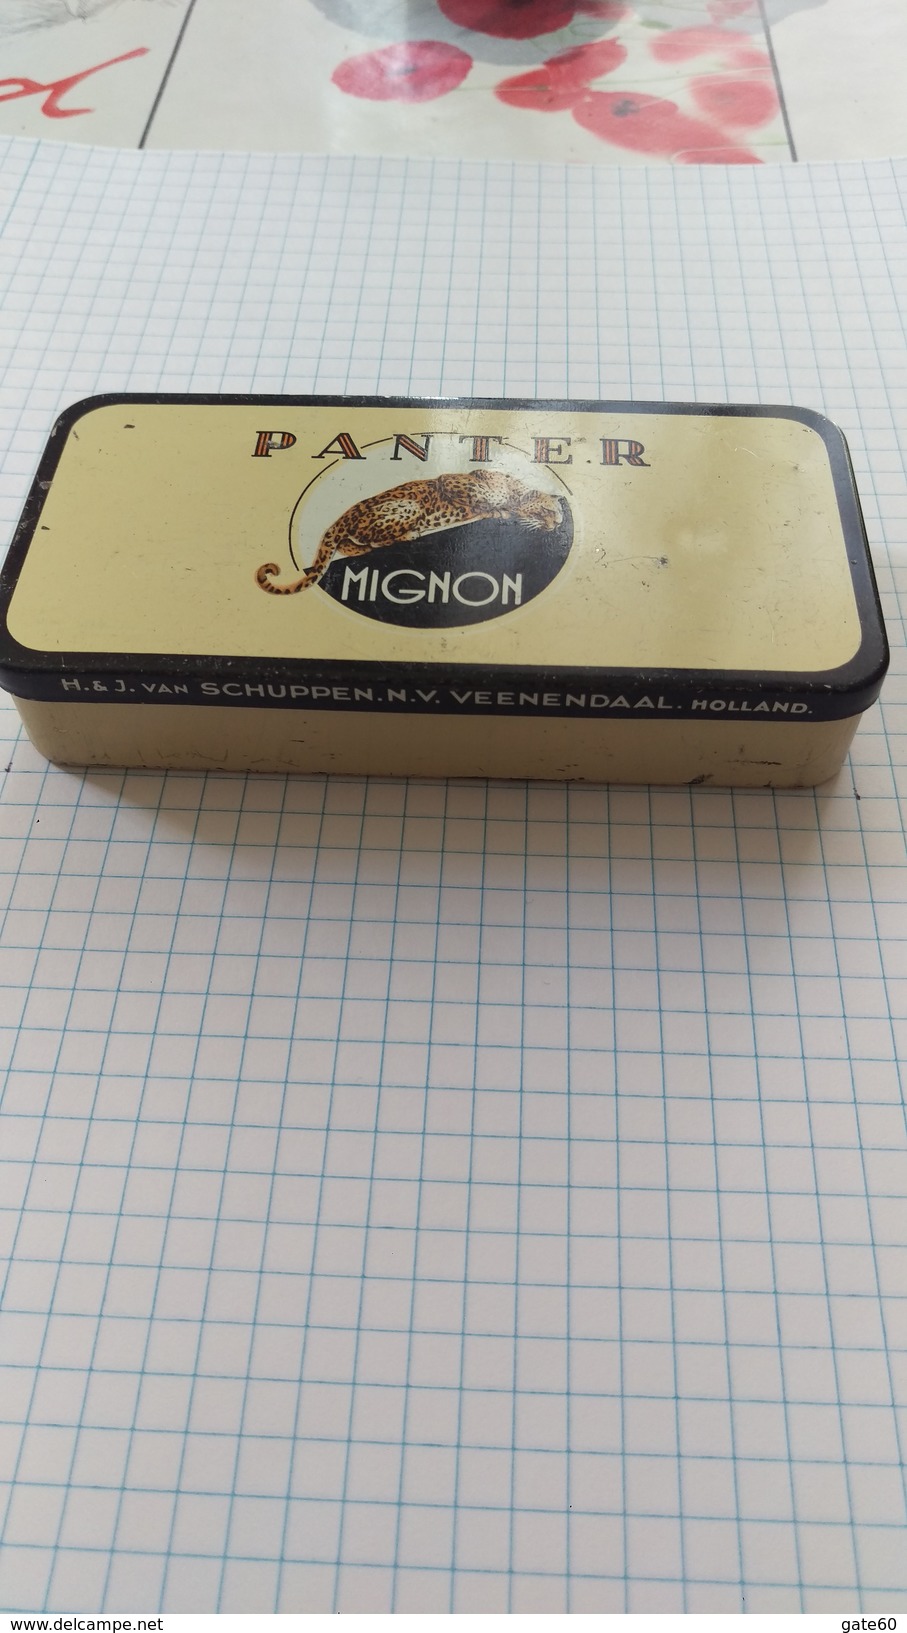 Panter Mignon Panter Sigarenfabrieken H. & J.Van Schuppen  Veenendaal - Holland - Empty Tobacco Boxes